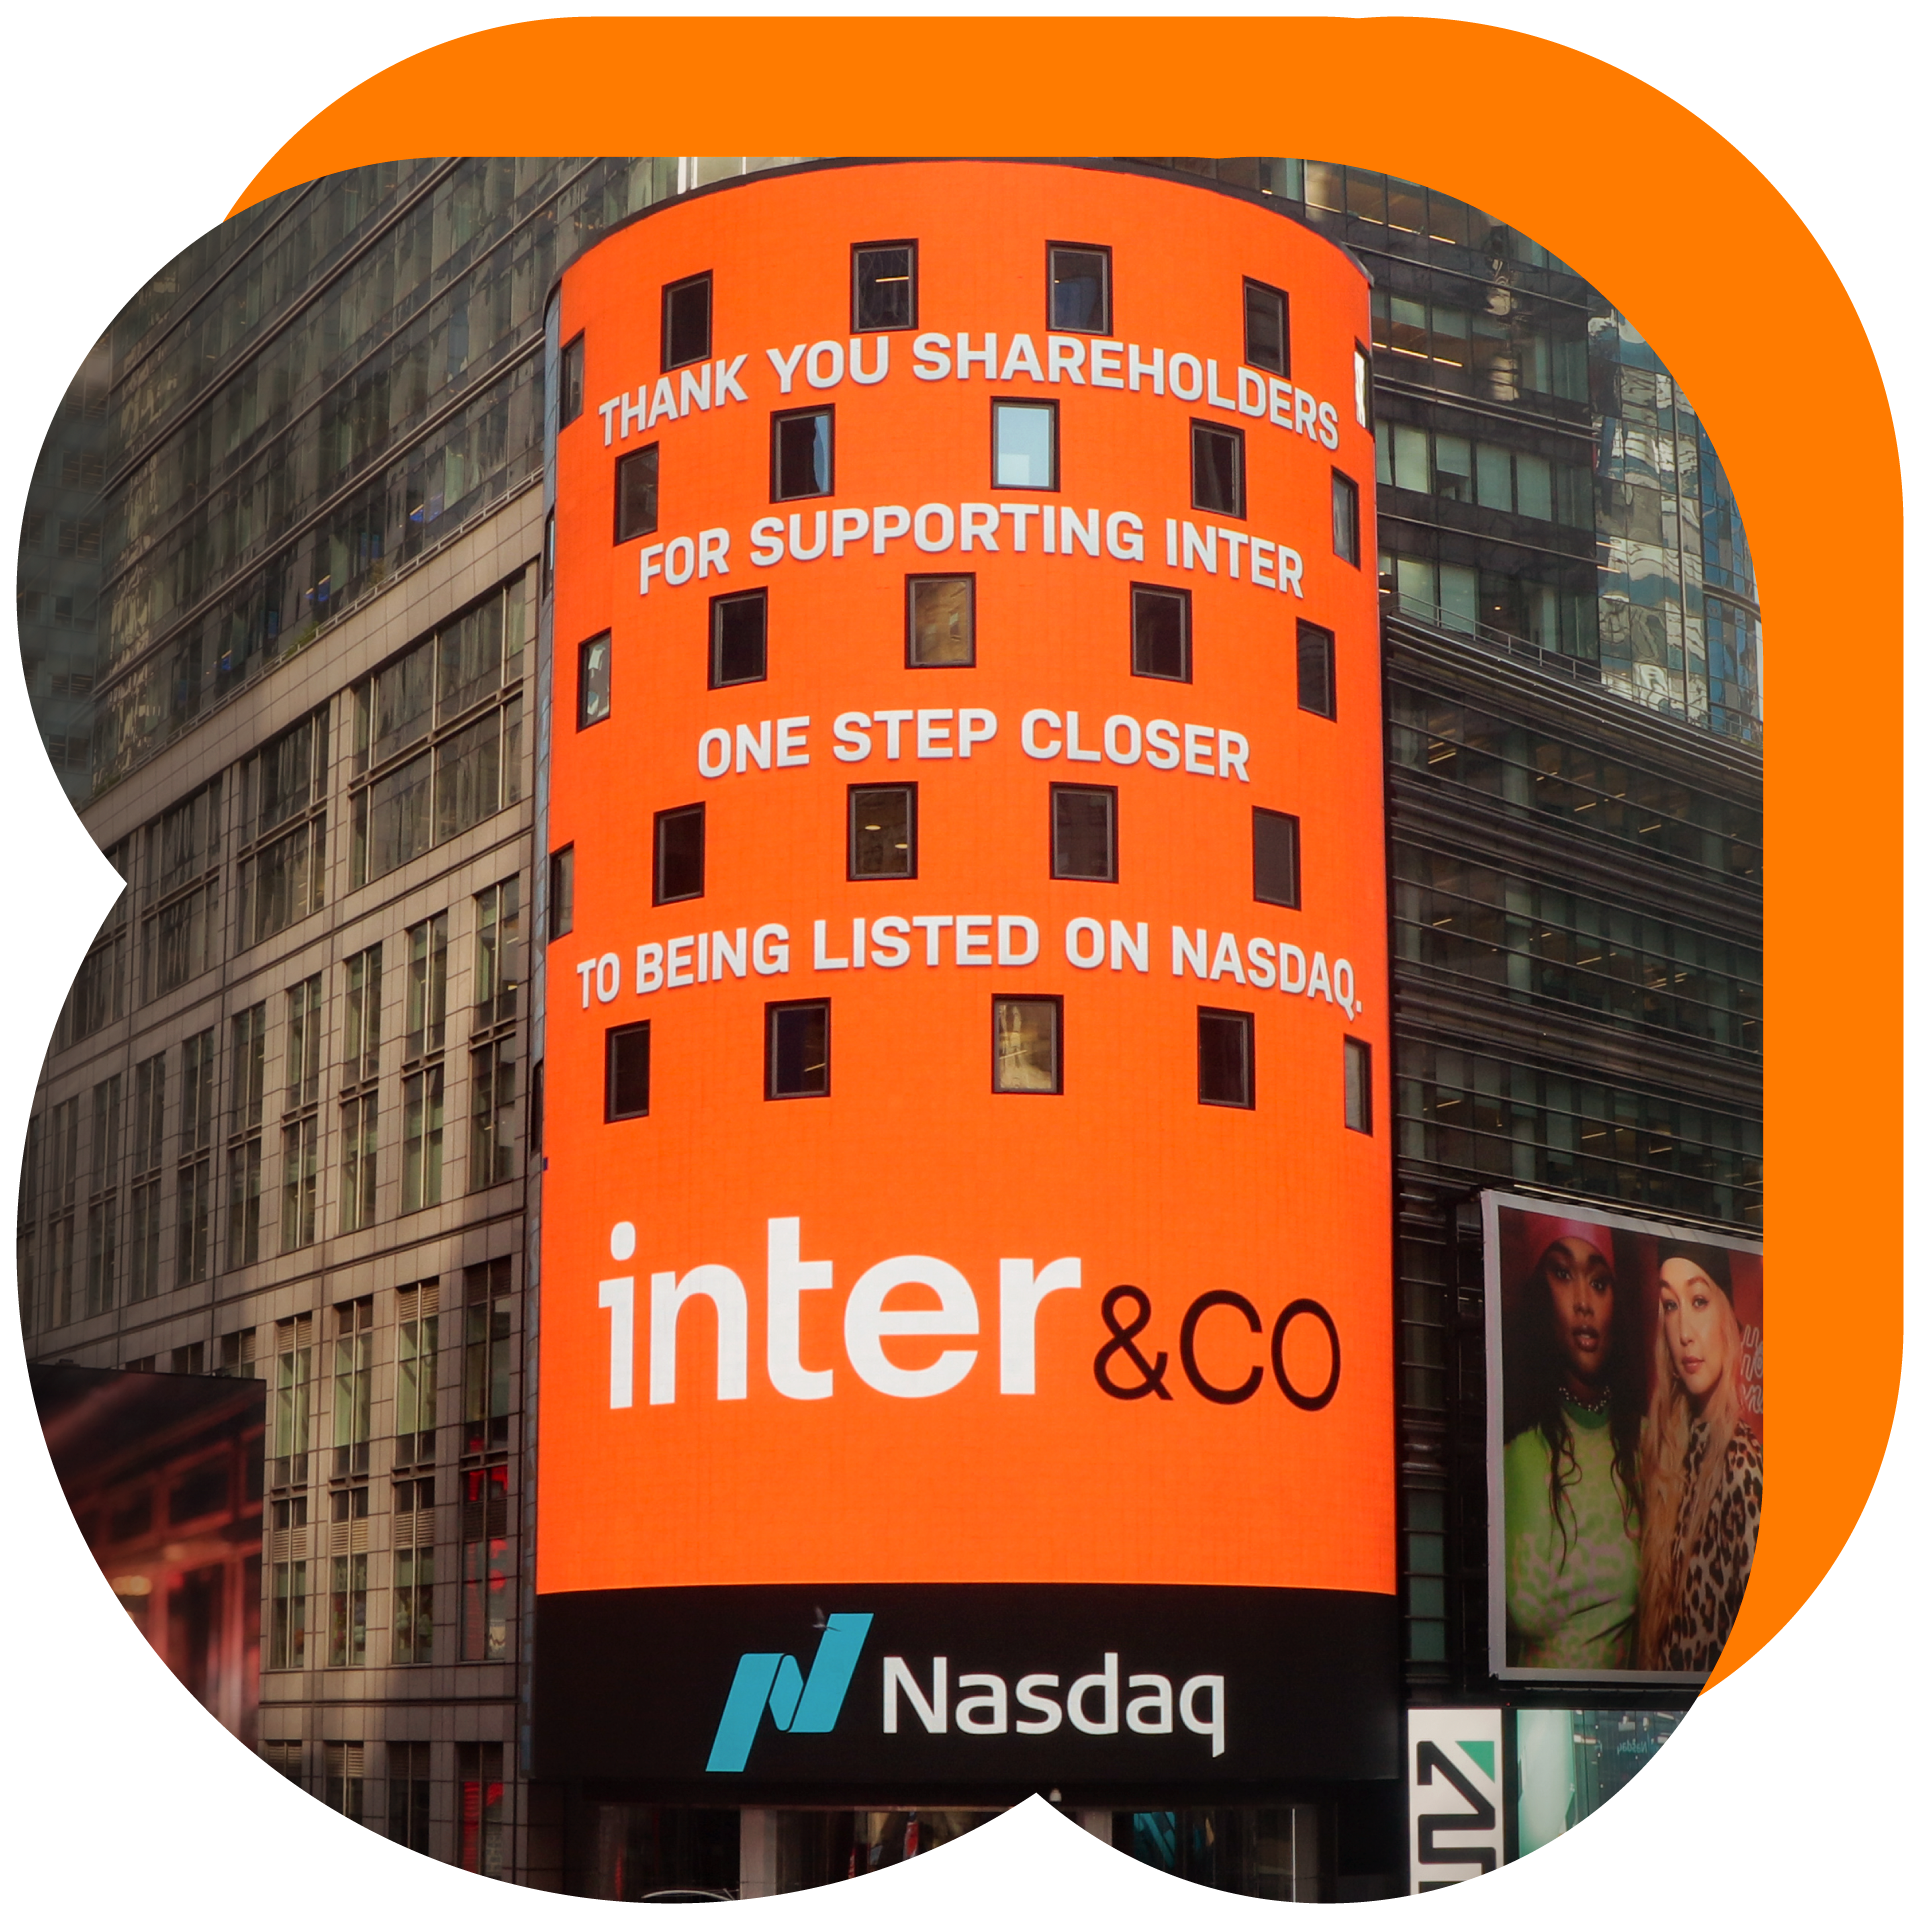 Imagem de Wall Street com a aplicação do Inter&CO, quando o Inter foi listado na Nasdaq.